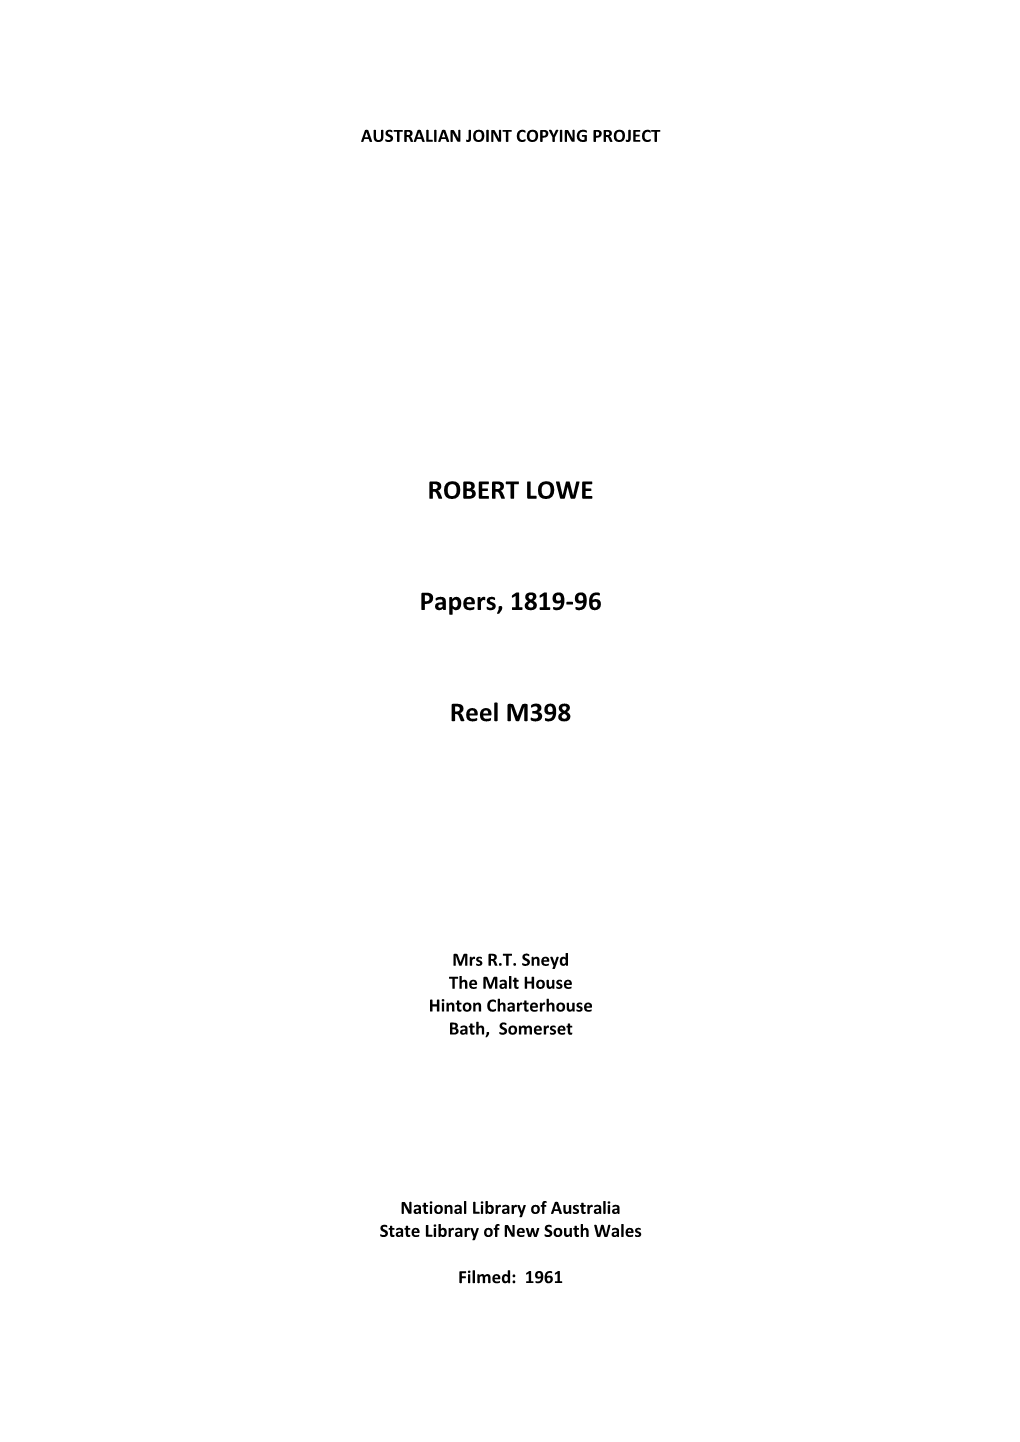 ROBERT LOWE Papers, 1819-96 Reel M398